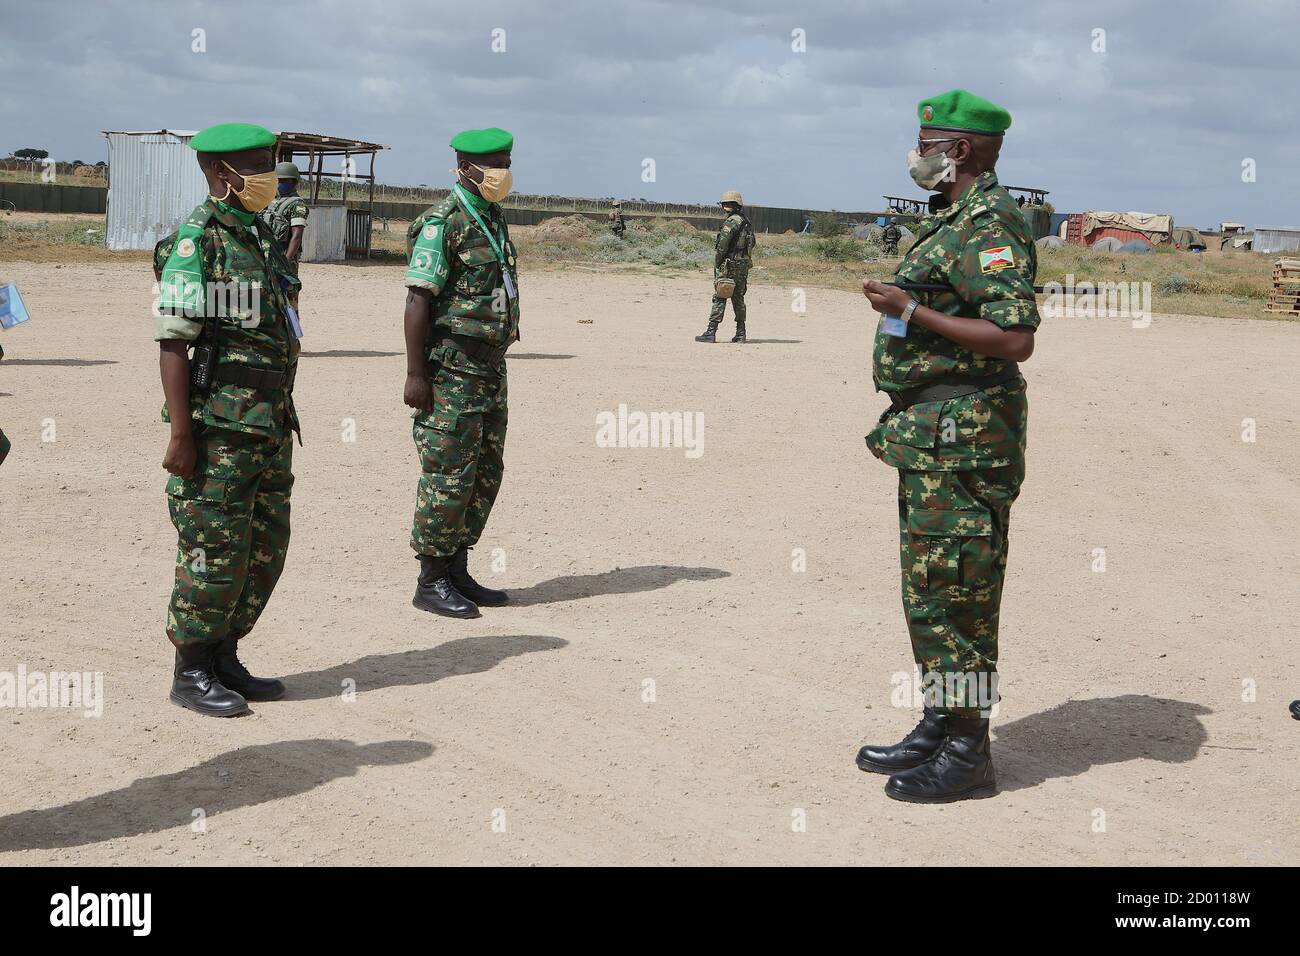 Altos oficiales militares de la Misión de la Unión Africana en Somalia (AMISOM) en el sector 5 dan la bienvenida al Teniente General Diomede Ndegeya (derecha), Comandante de la Fuerza de AMISOM durante su viaje de familiarización con la sede del sector 5 en Jowhar, estado de HirShabelle, Somalia, el 20 de septiembre de 2020. Foto de stock